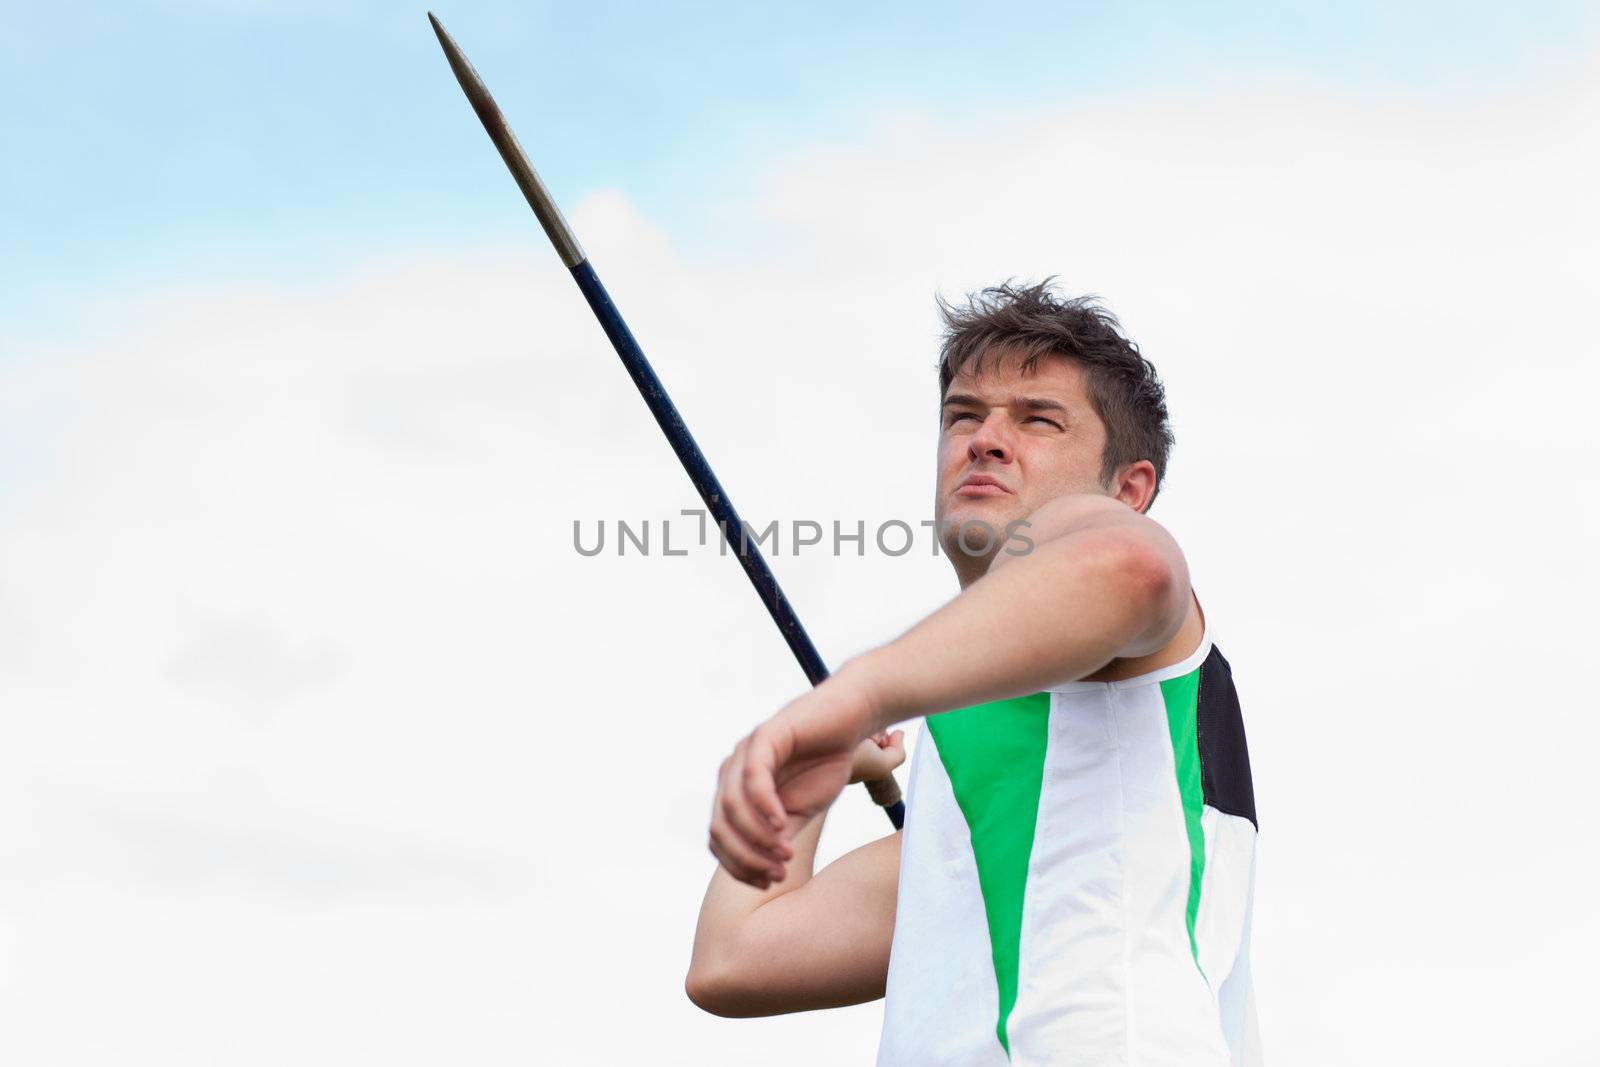 Determined sportsman throwing the javelin by Wavebreakmedia